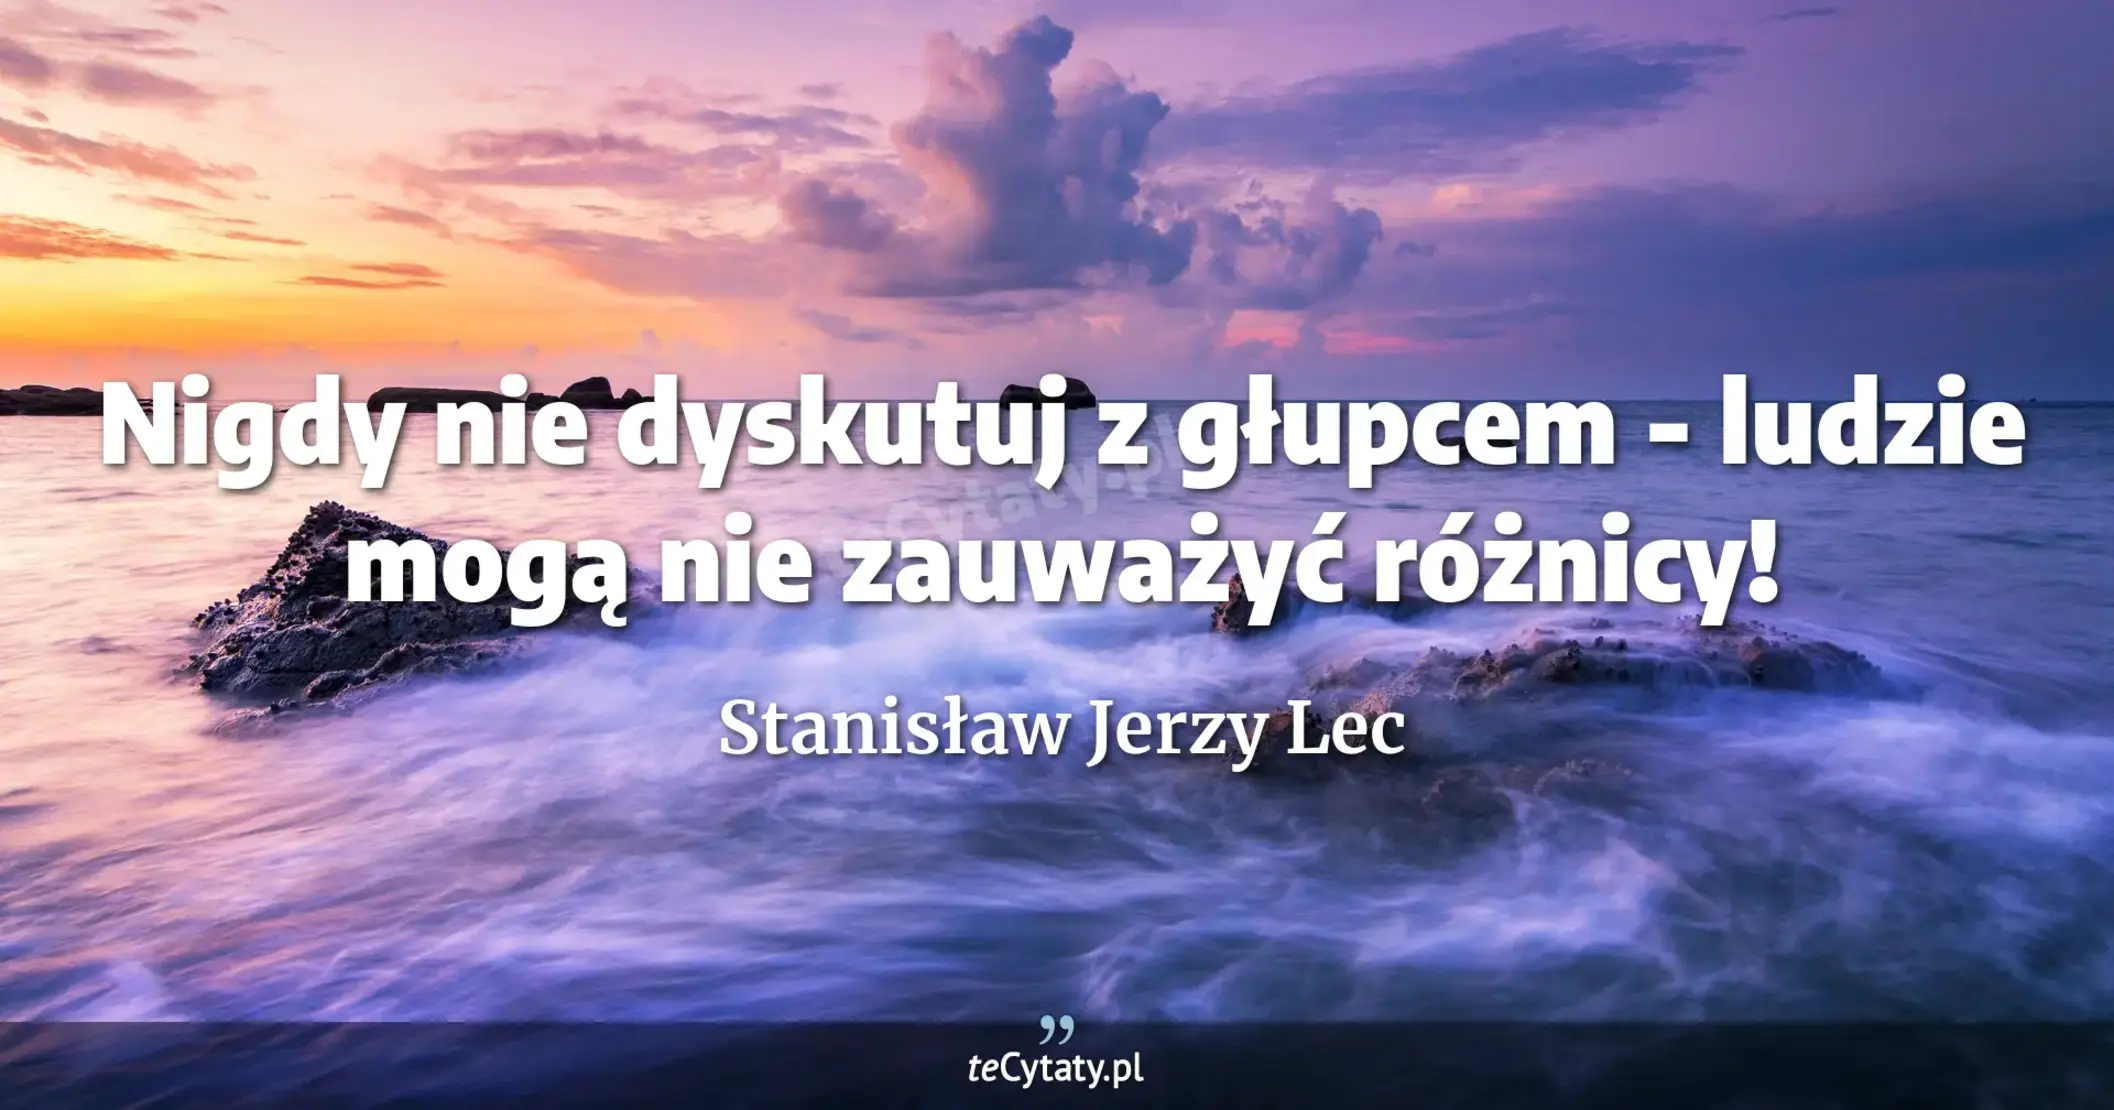 Nigdy nie dyskutuj z głupcem - ludzie mogą nie zauważyć różnicy! - Stanisław Jerzy Lec